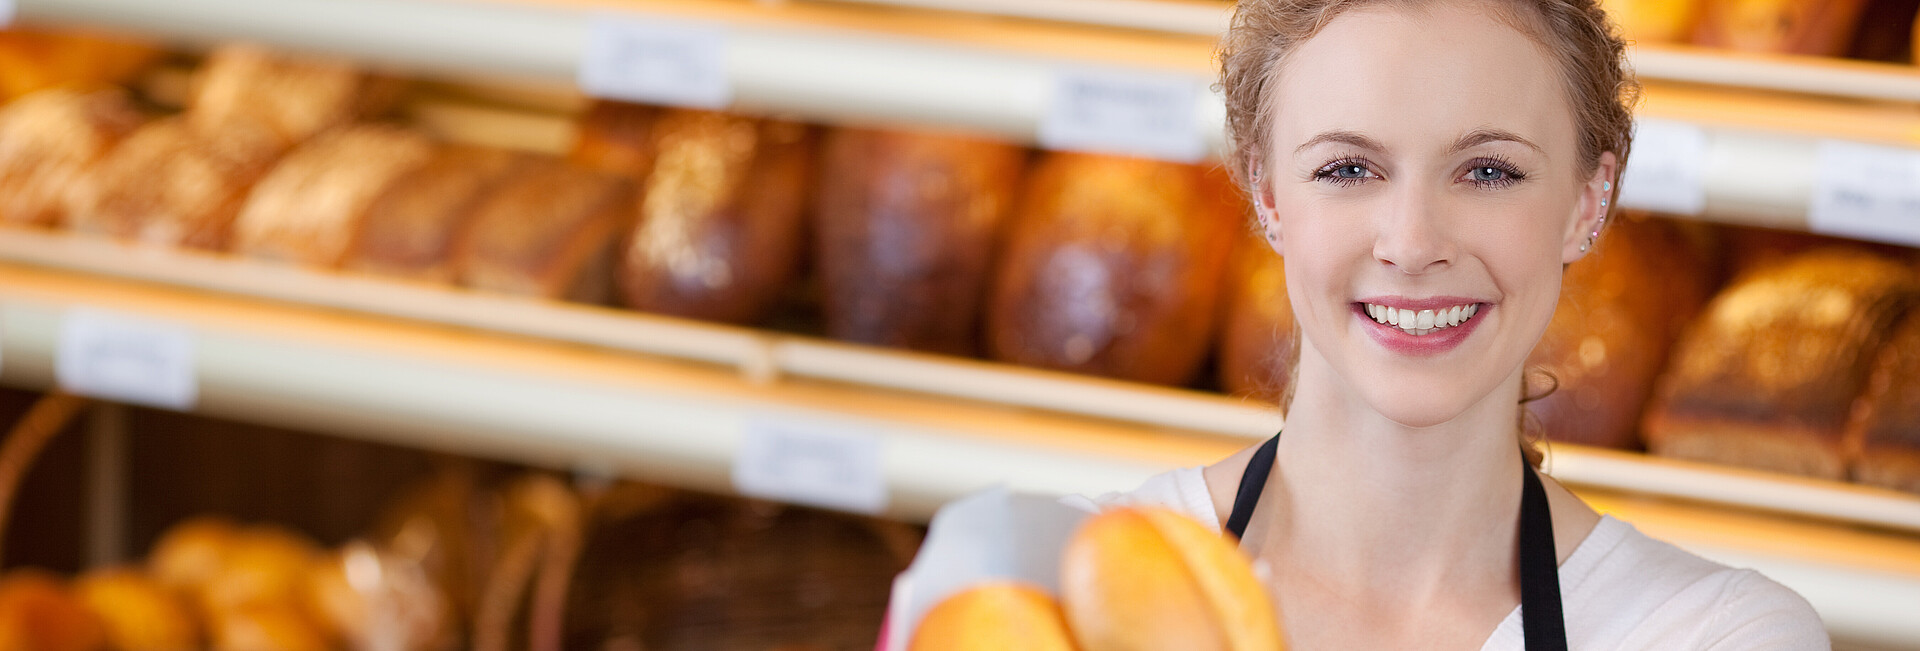 Eine Bäckereiverkäuferin hält dem Betrachter lächelnd eine Tüte mit Brötchen entgegen